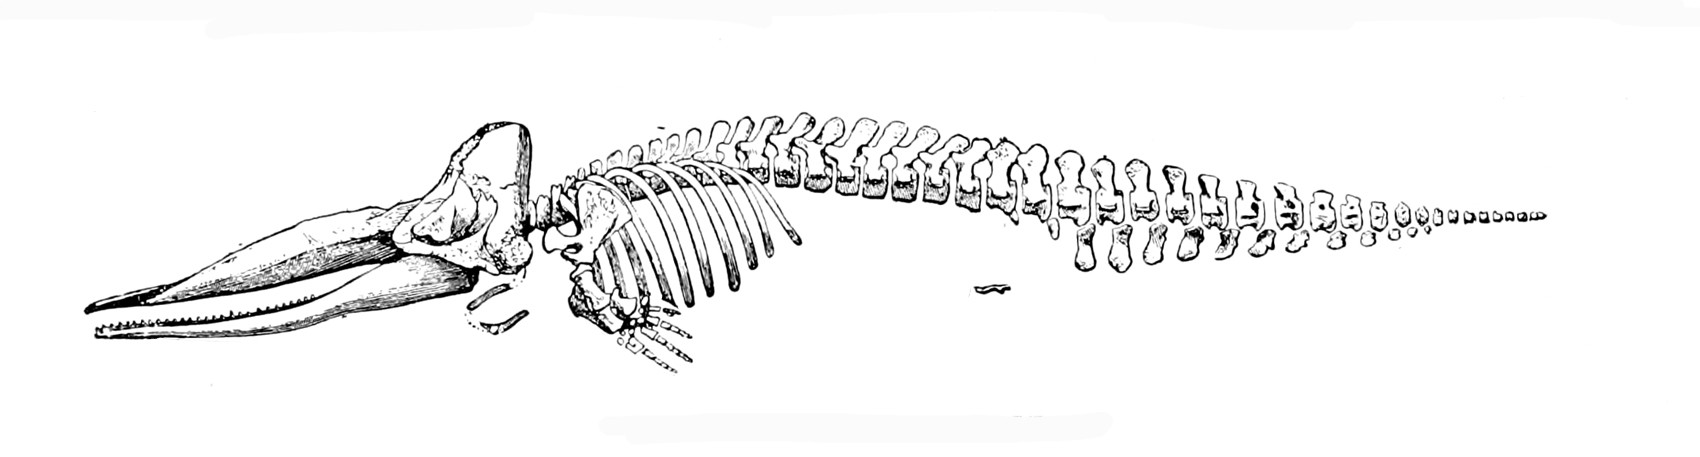 http://upload.wikimedia.org/wikipedia/commons/8/86/Sperm_whale_skeleton.jpg